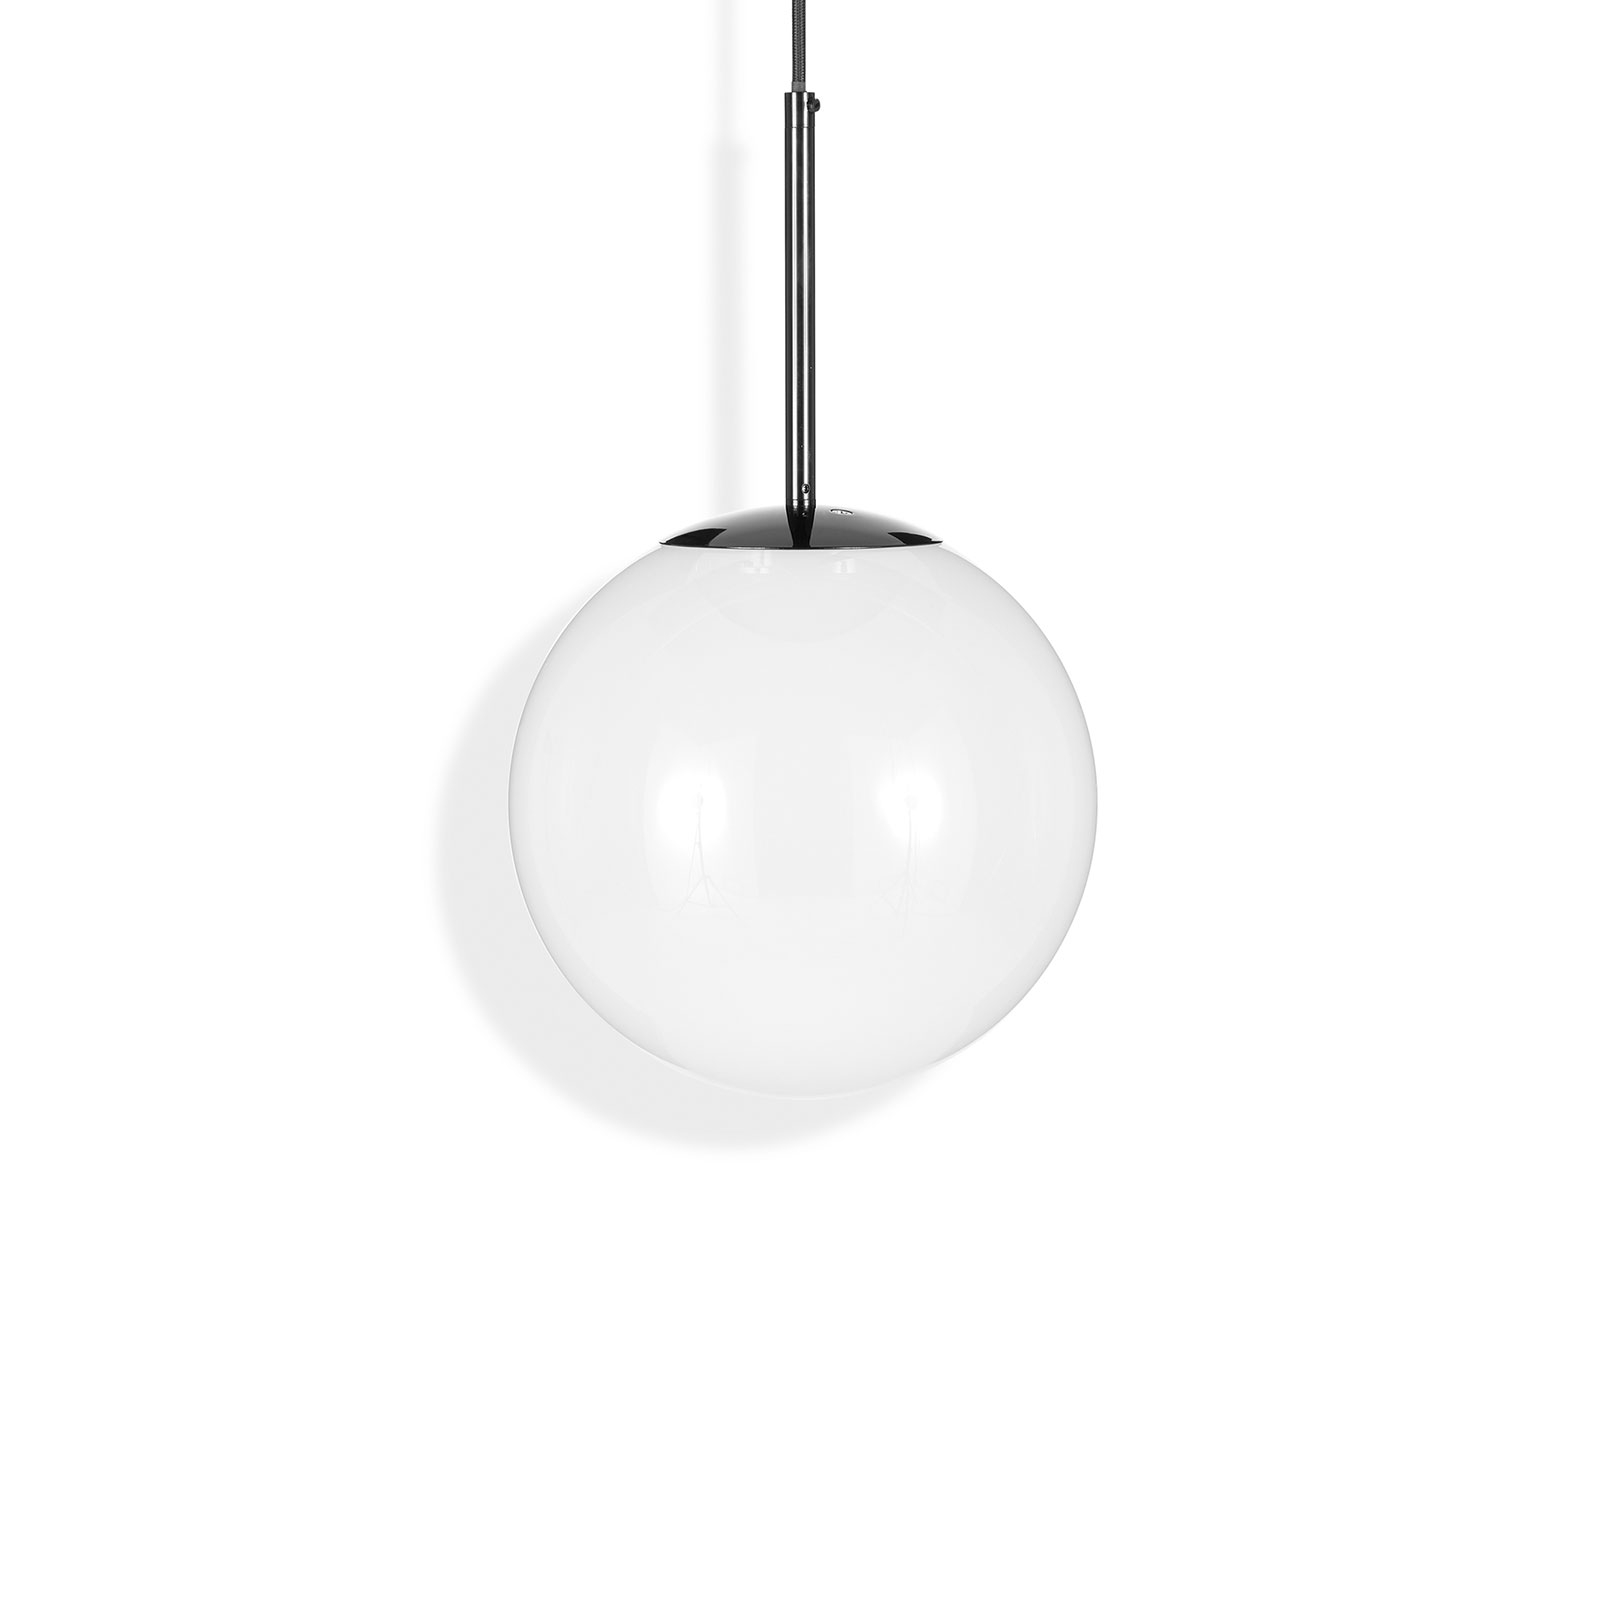 Tom Dixon Globe spherical LED hanging light Ø 25cm